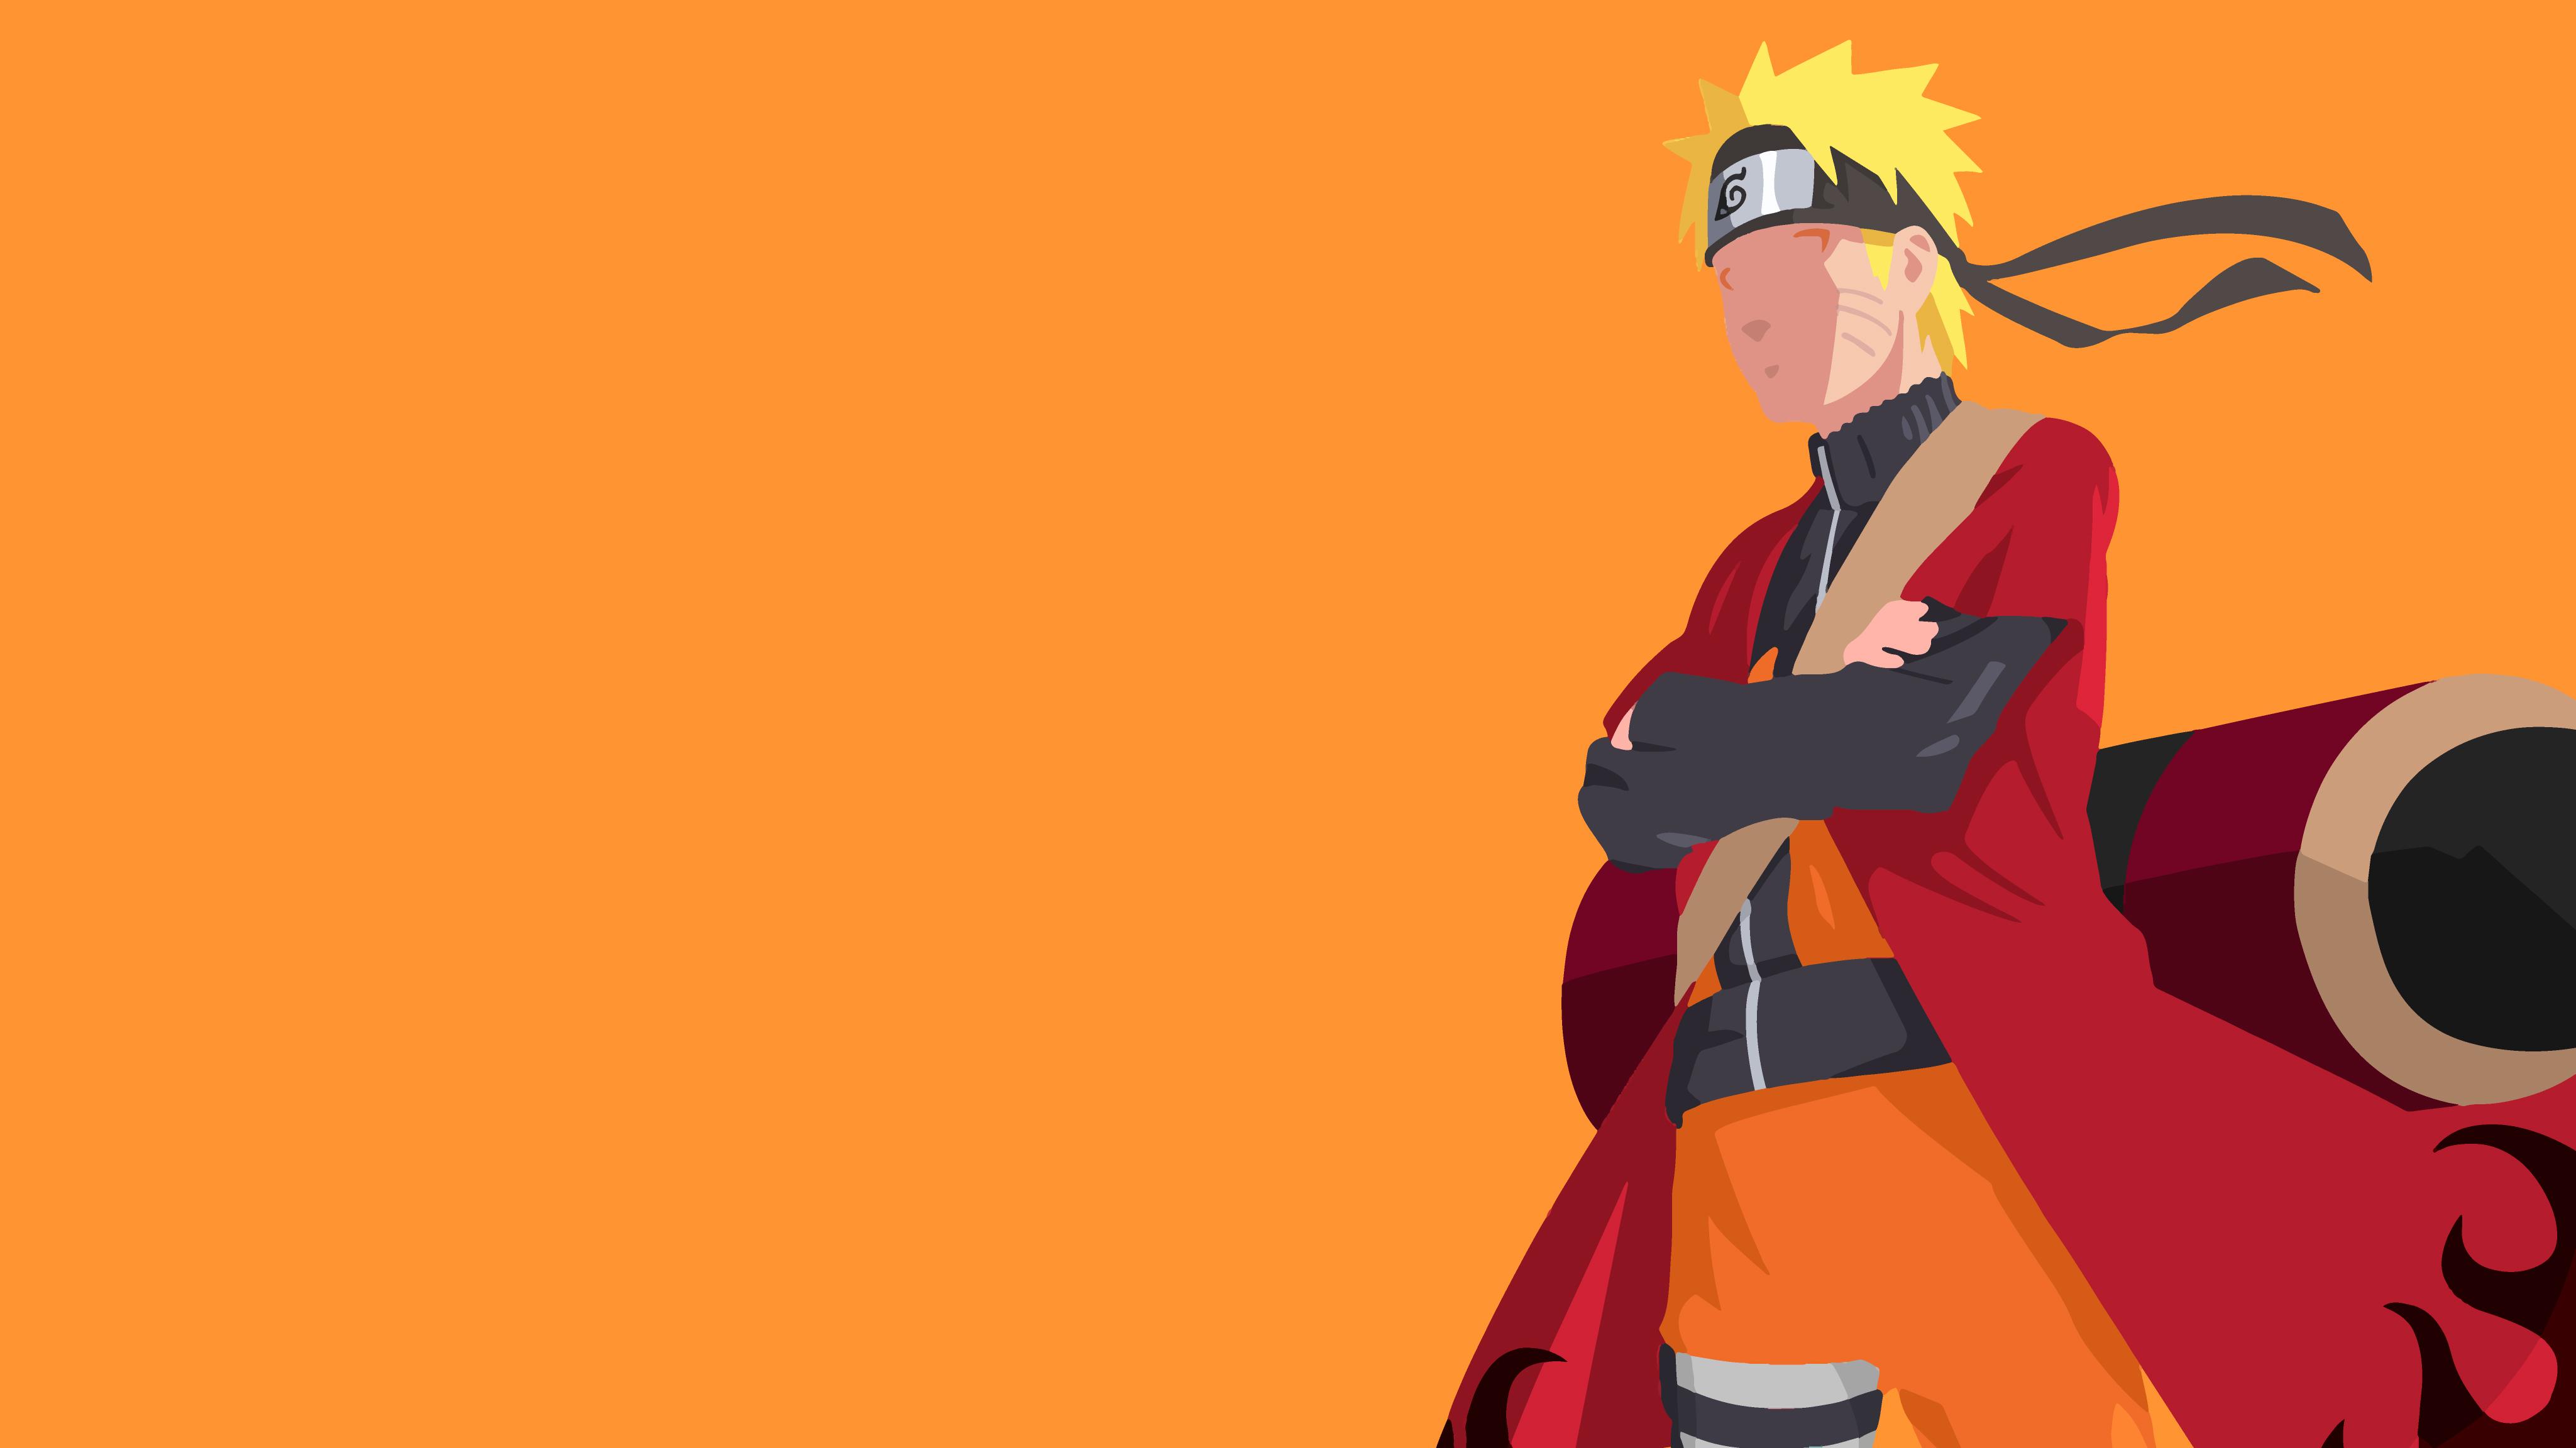 Naruto Ultra HD - sự sống động và chi tiết của hình ảnh Naruto trong chất lượng Ultra HD sẽ khiến bạn phải trầm trồ. Bức tranh như cả một bức ảnh thật, với đường nét và màu sắc tuyệt đỉnh. Hãy tìm hiểu thêm về những chi tiết đặc sắc của bức tranh này.